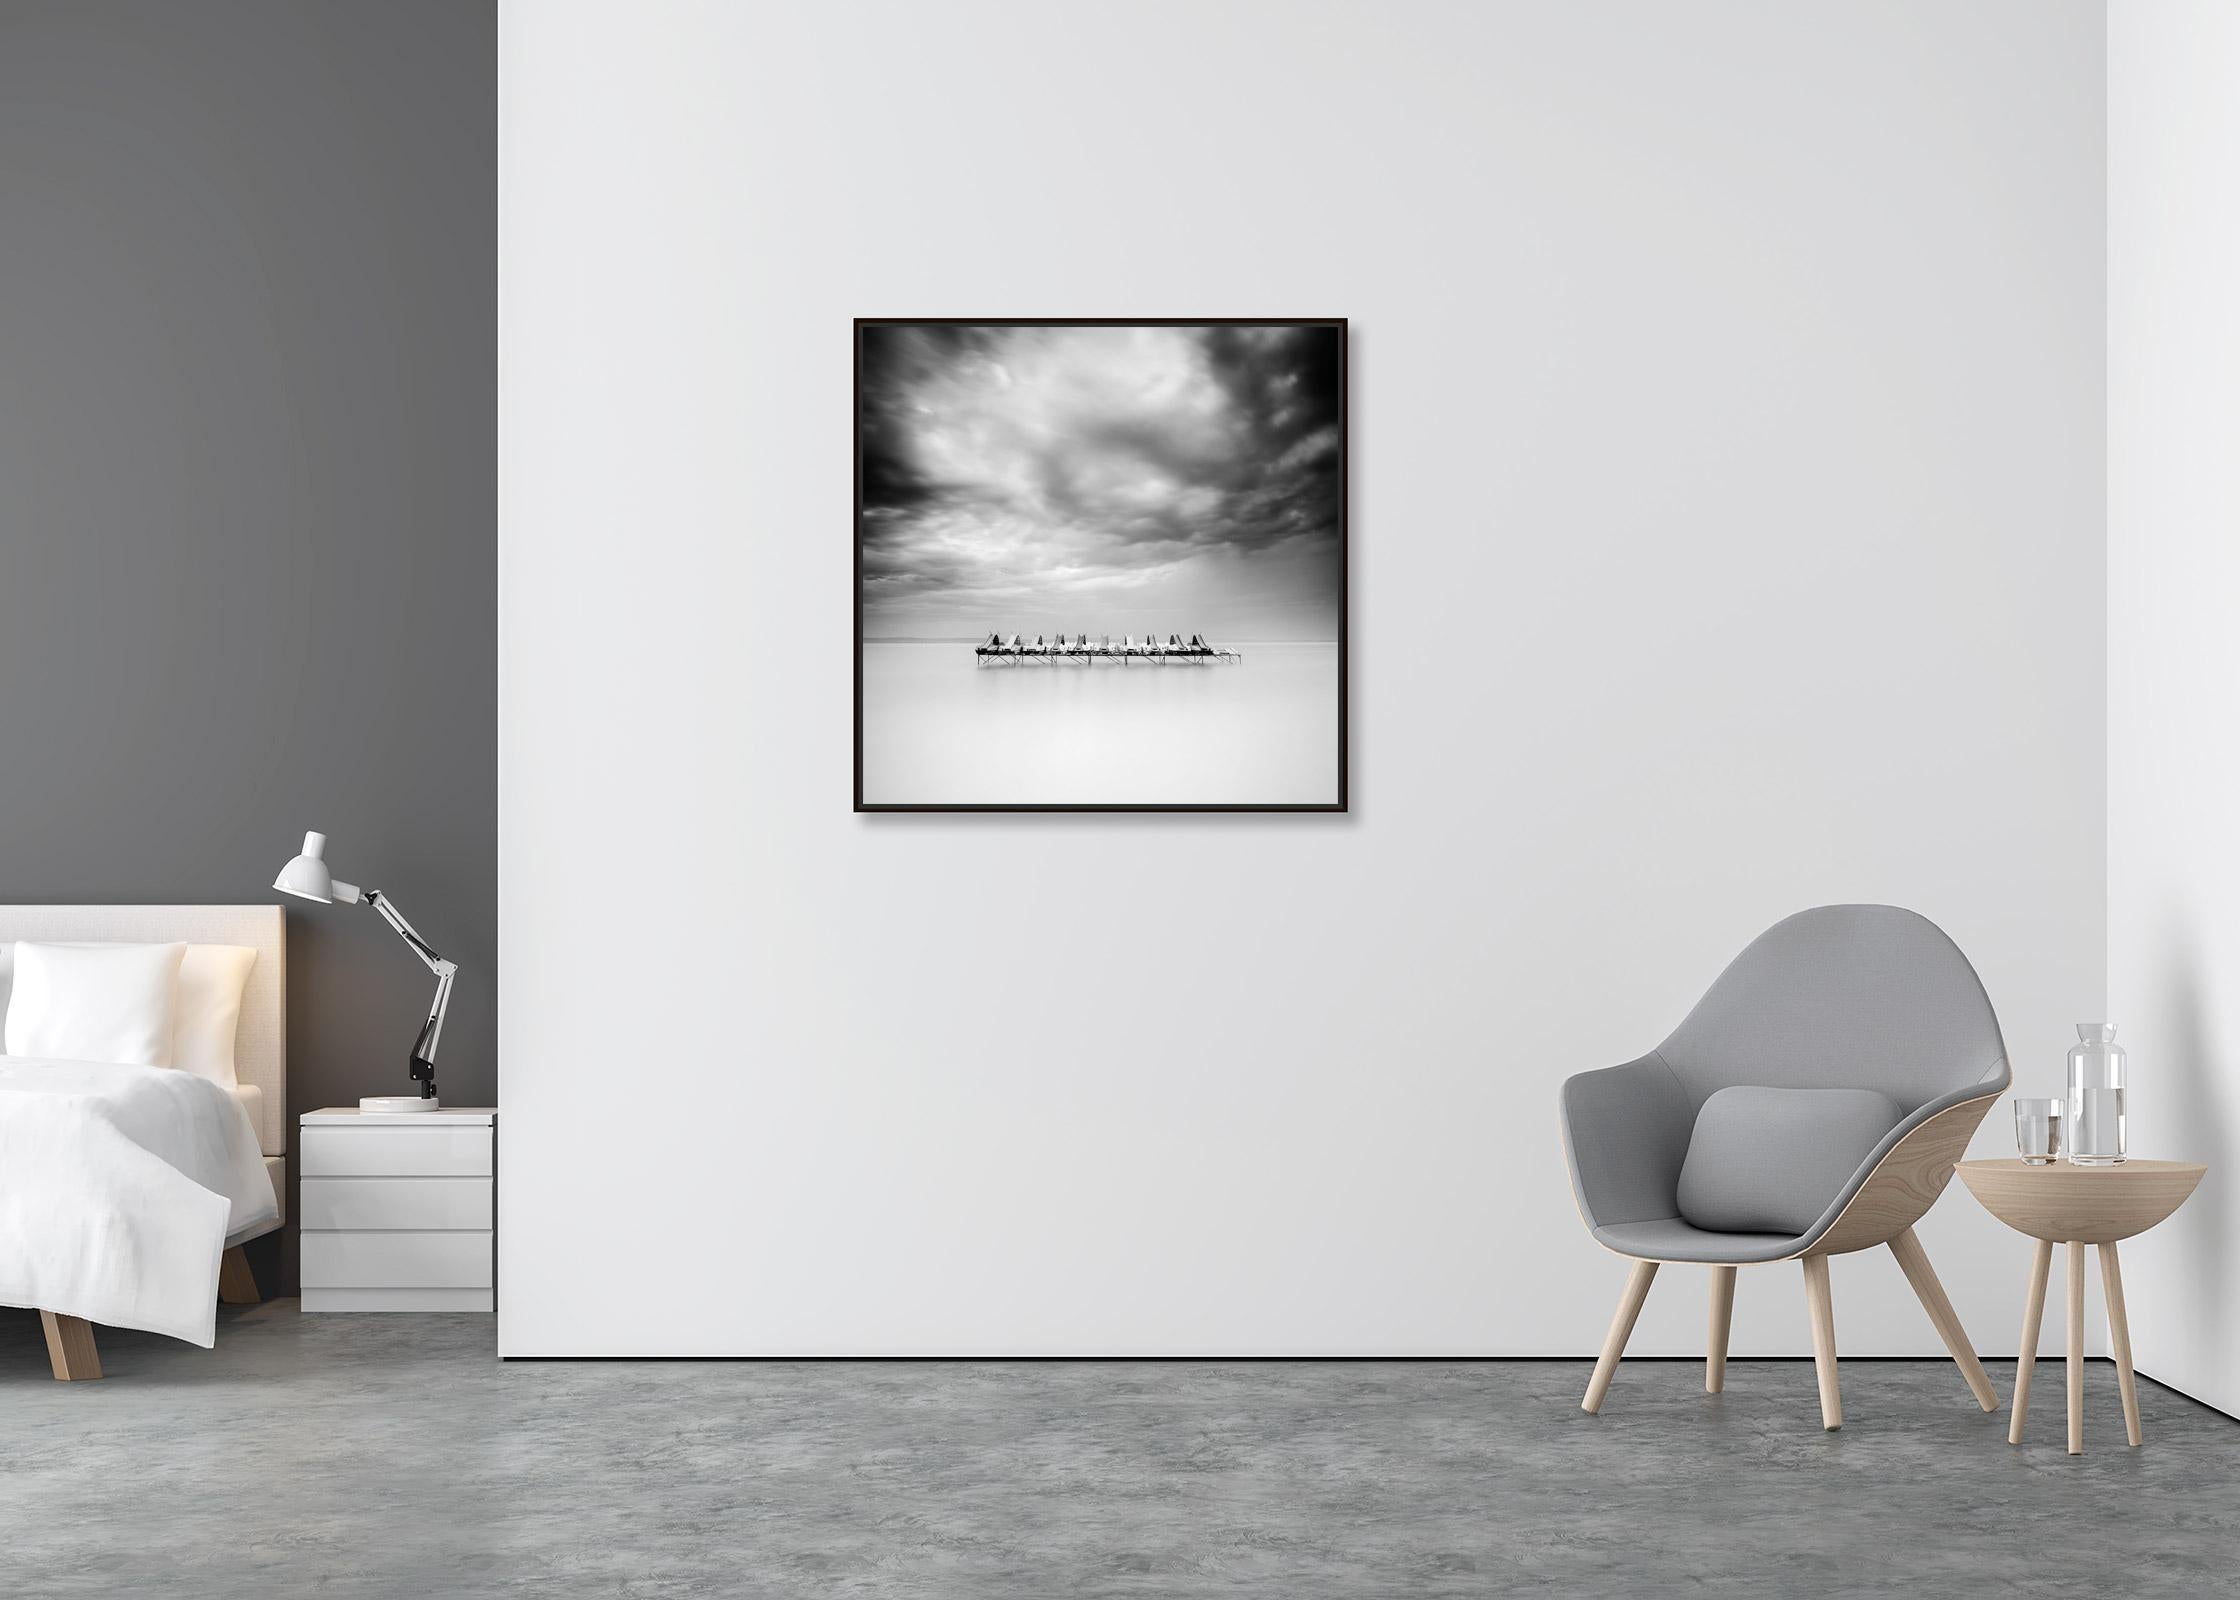 Paddelboot, Minimalismus, Schwarz-Weiß, Langzeitbelichtung, Wasserlandschaftsfotografie (Zeitgenössisch), Photograph, von Gerald Berghammer